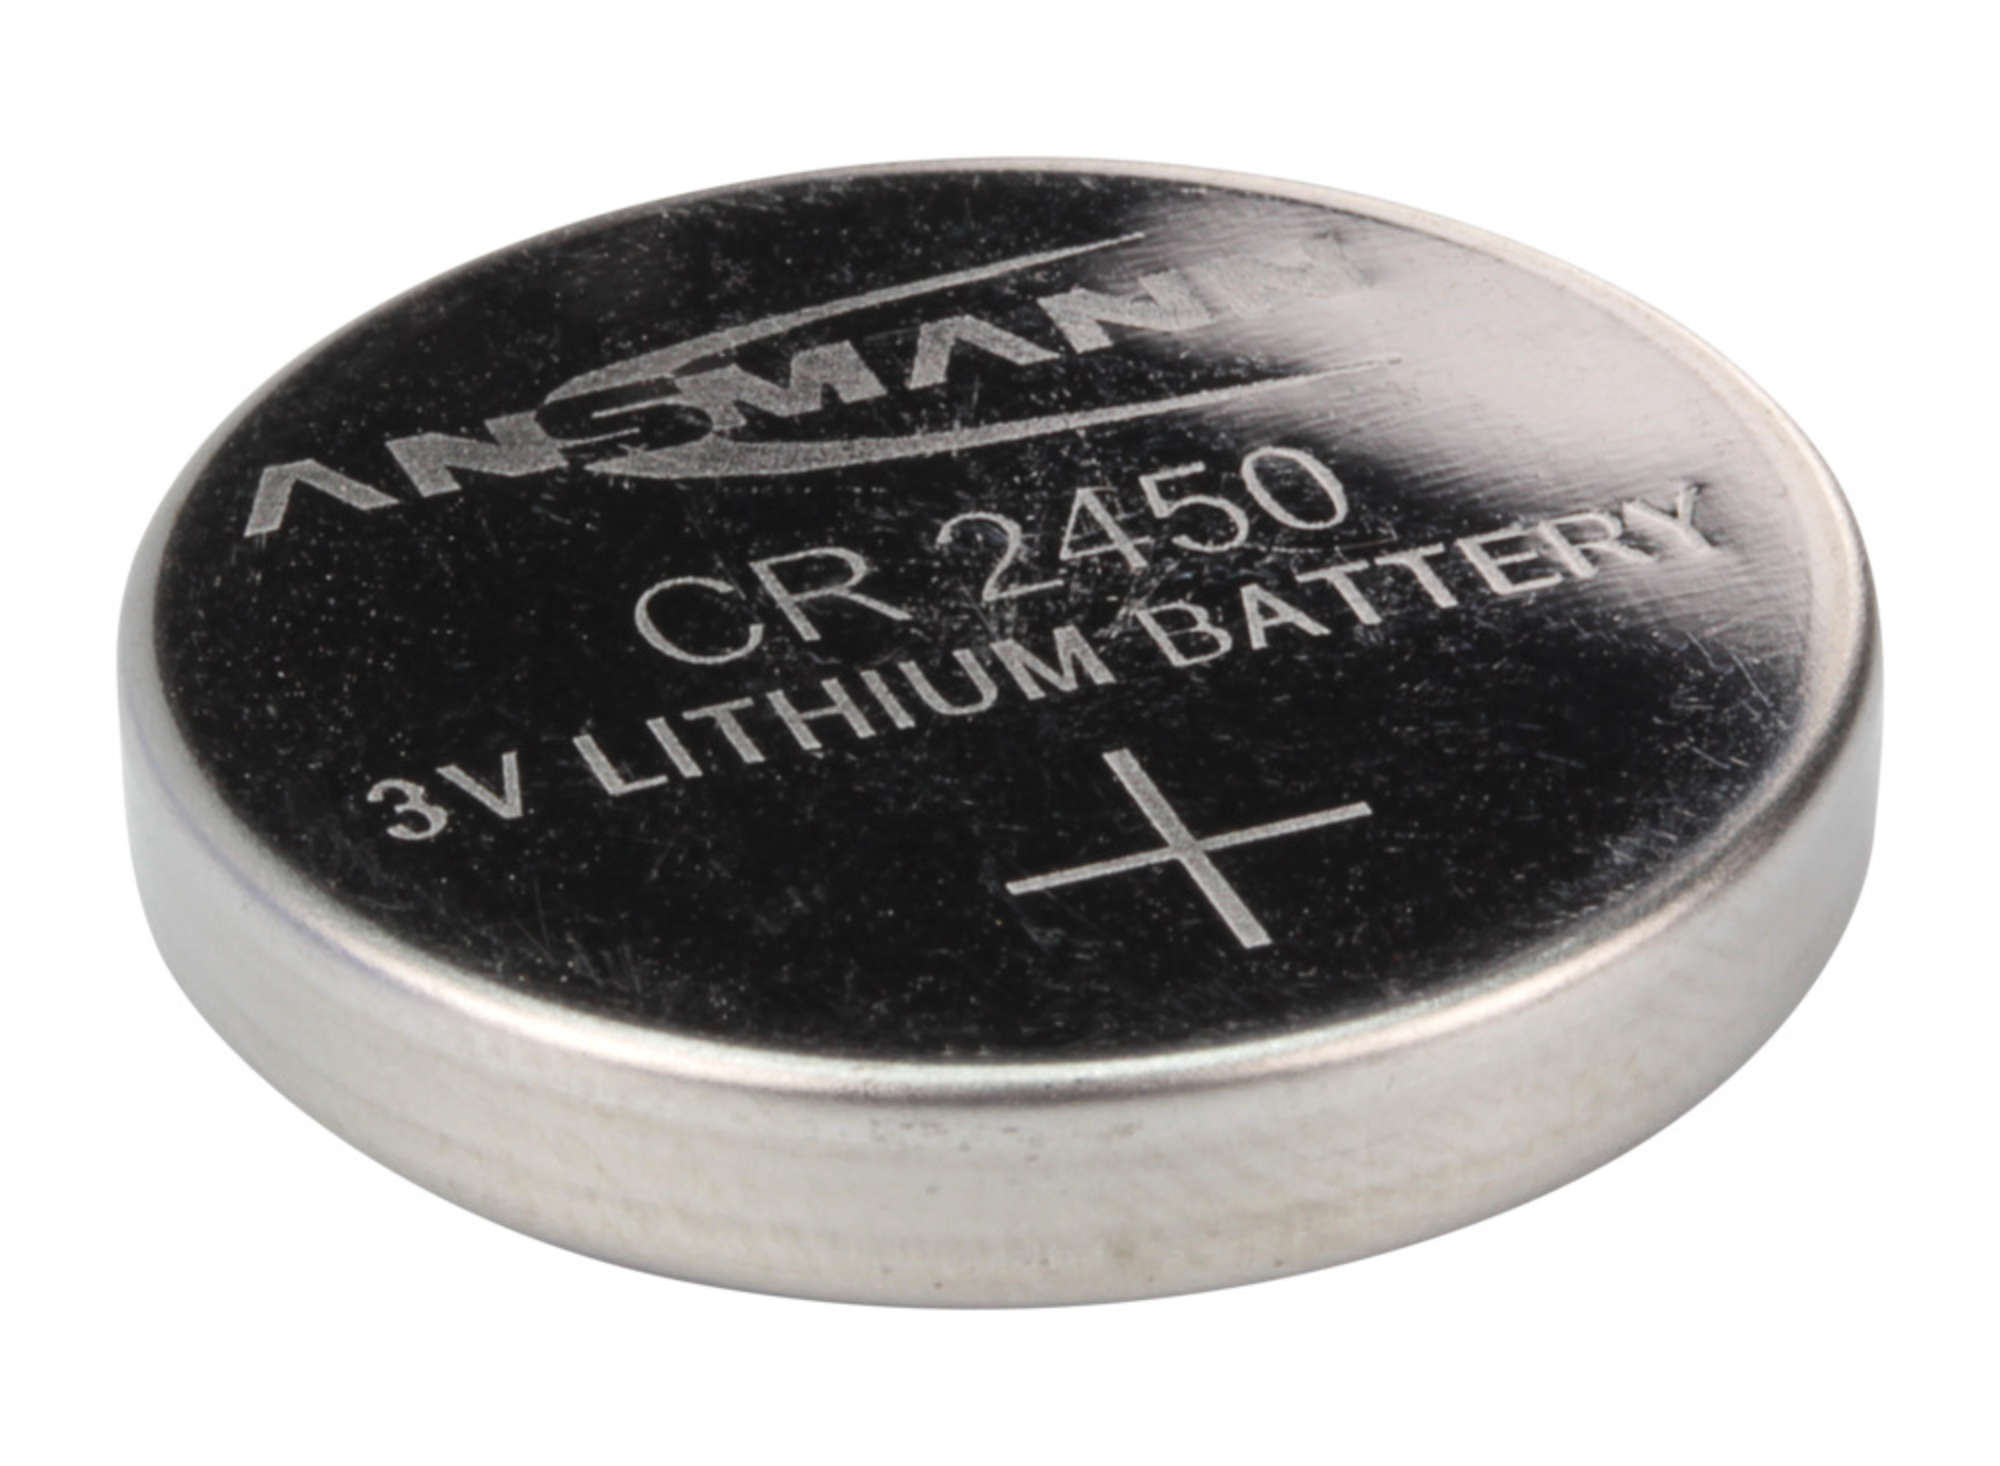 ANSMANN Lithium Knopfzelle CR2450, 1 Stück